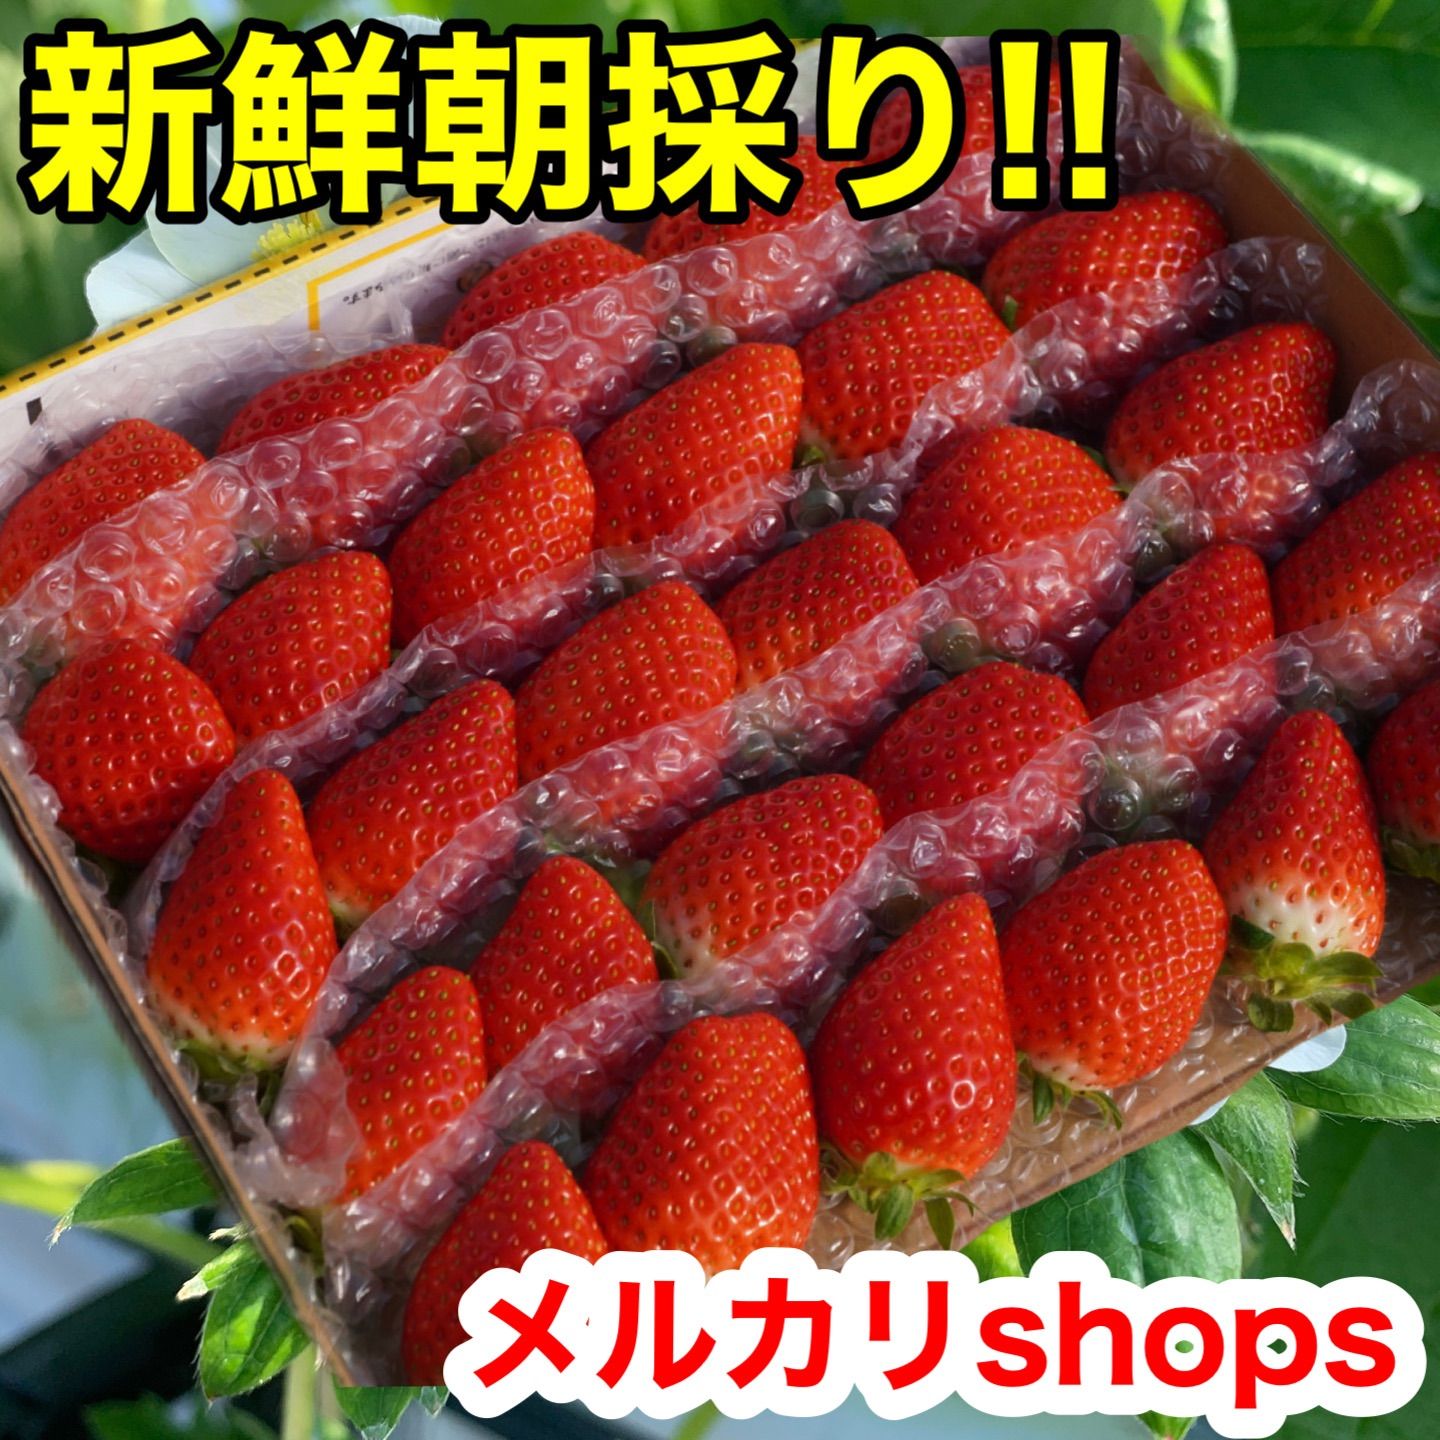 「新鮮朝採り」クール便❗️2箱セット かんちゃん農園 甘いいちご